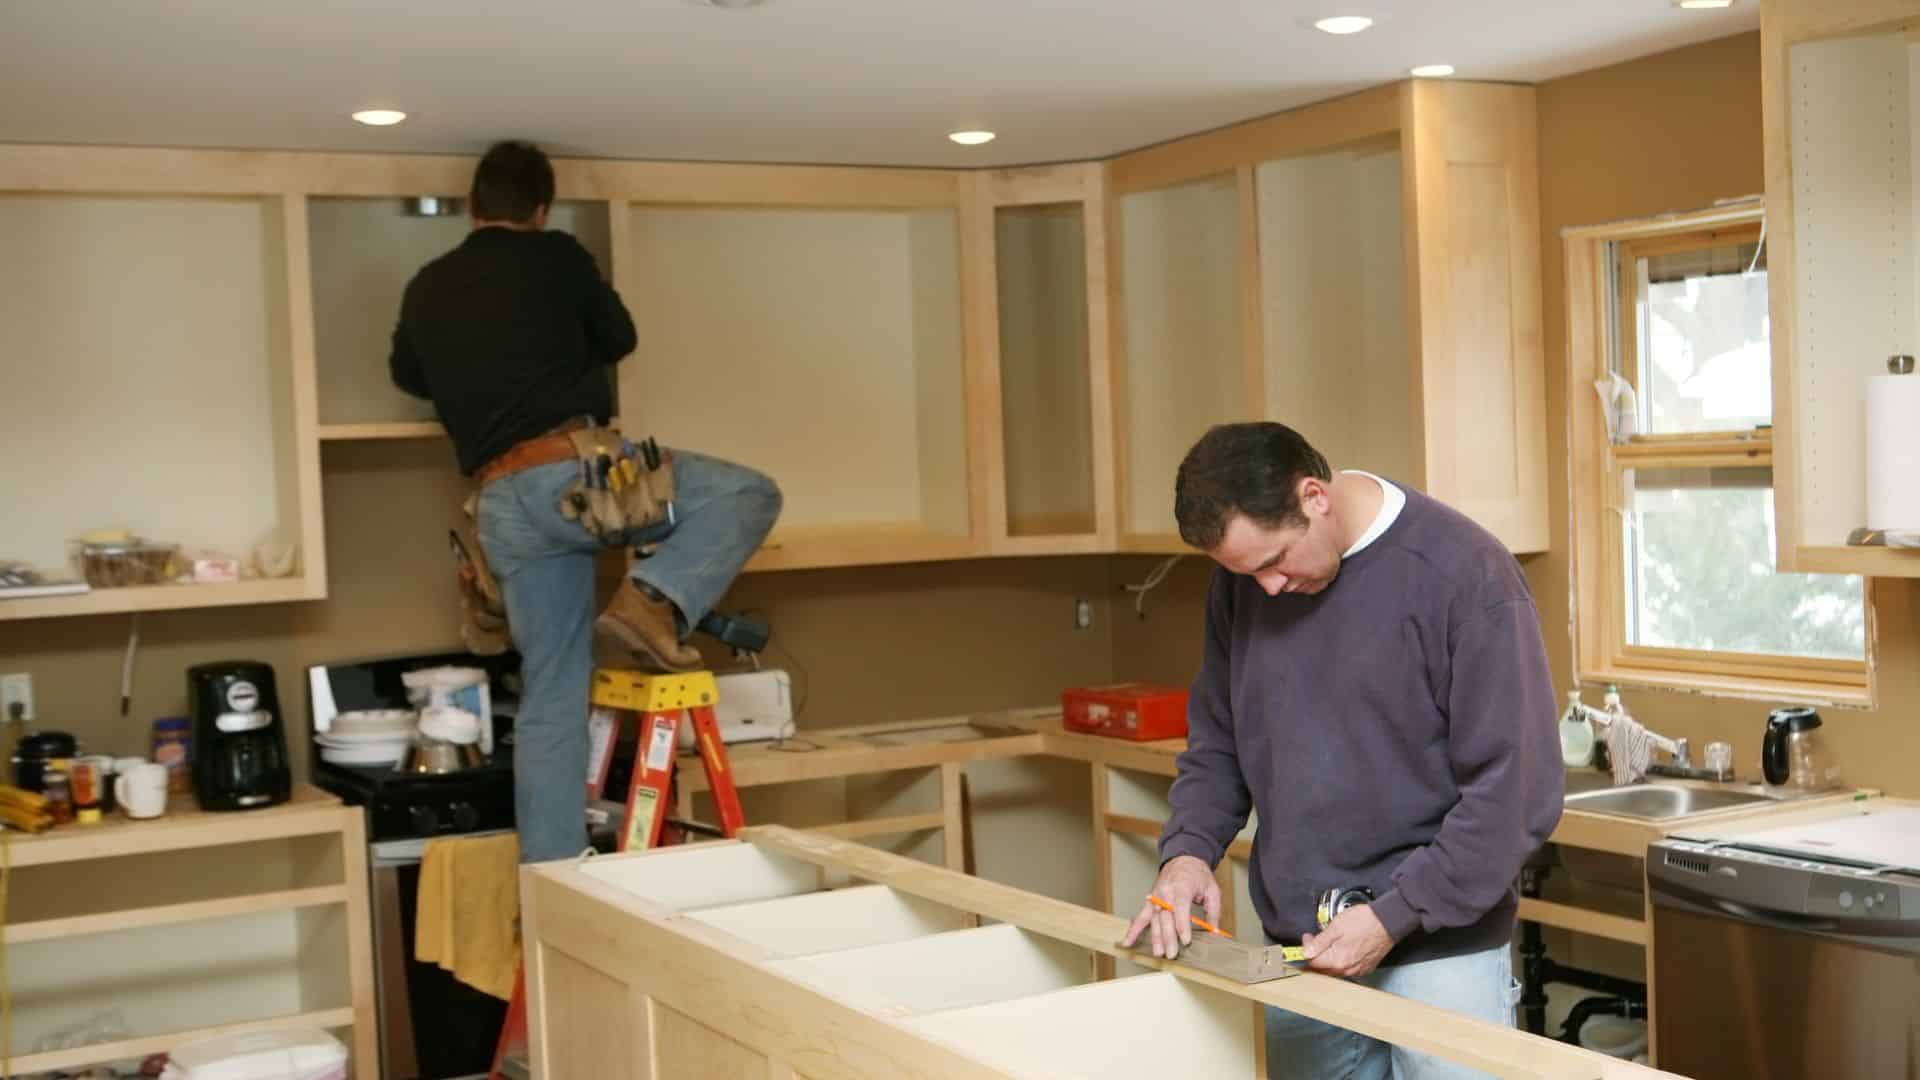 2 men doing labor in kitchen